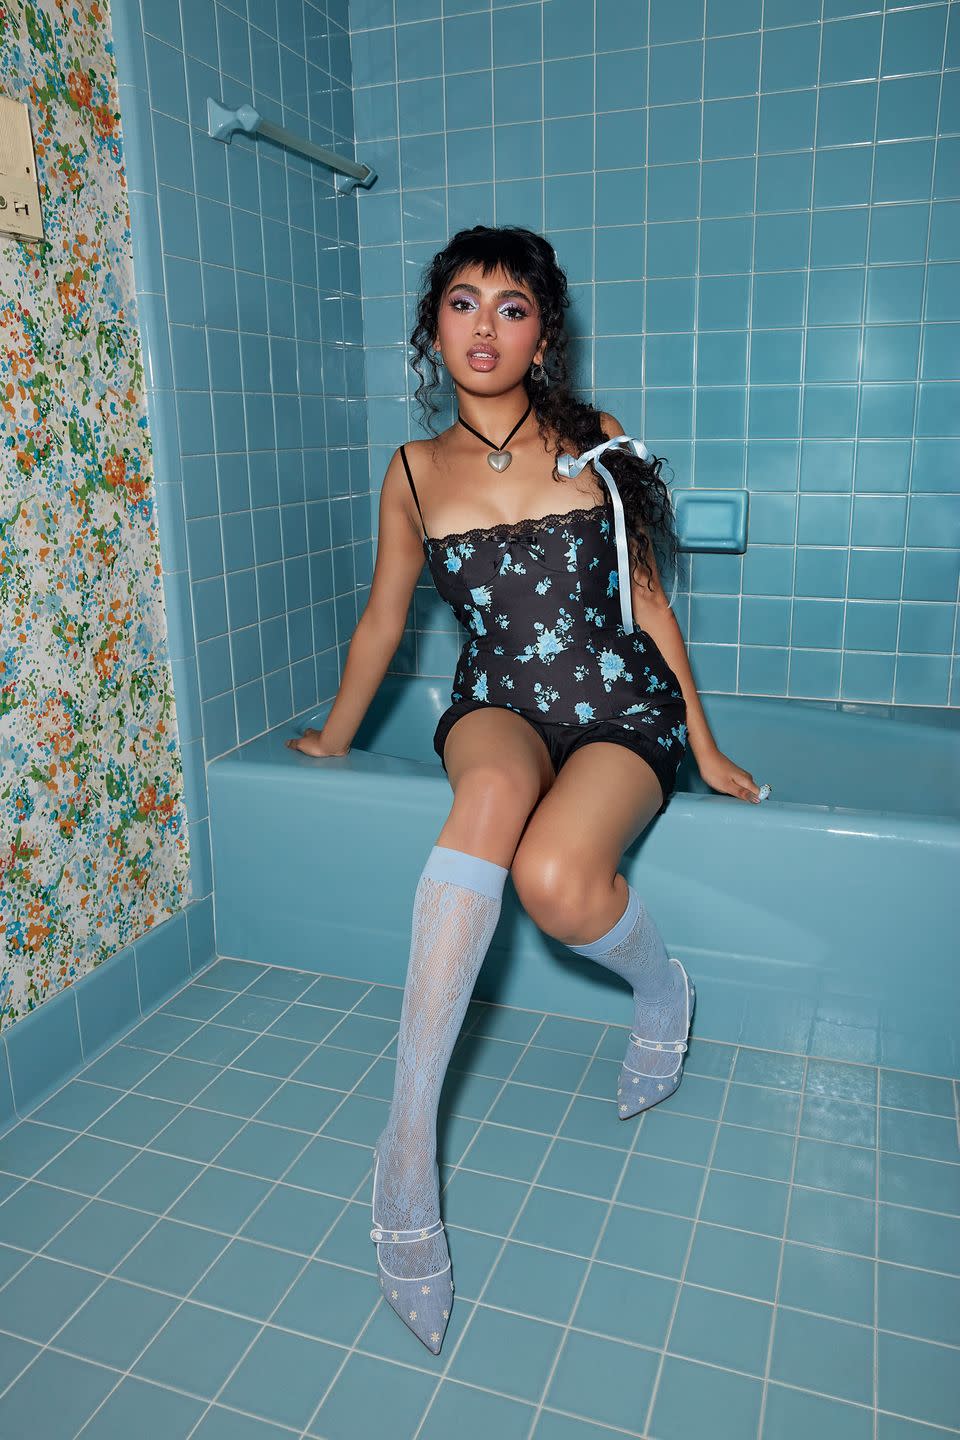 a woman sitting on a bathtub